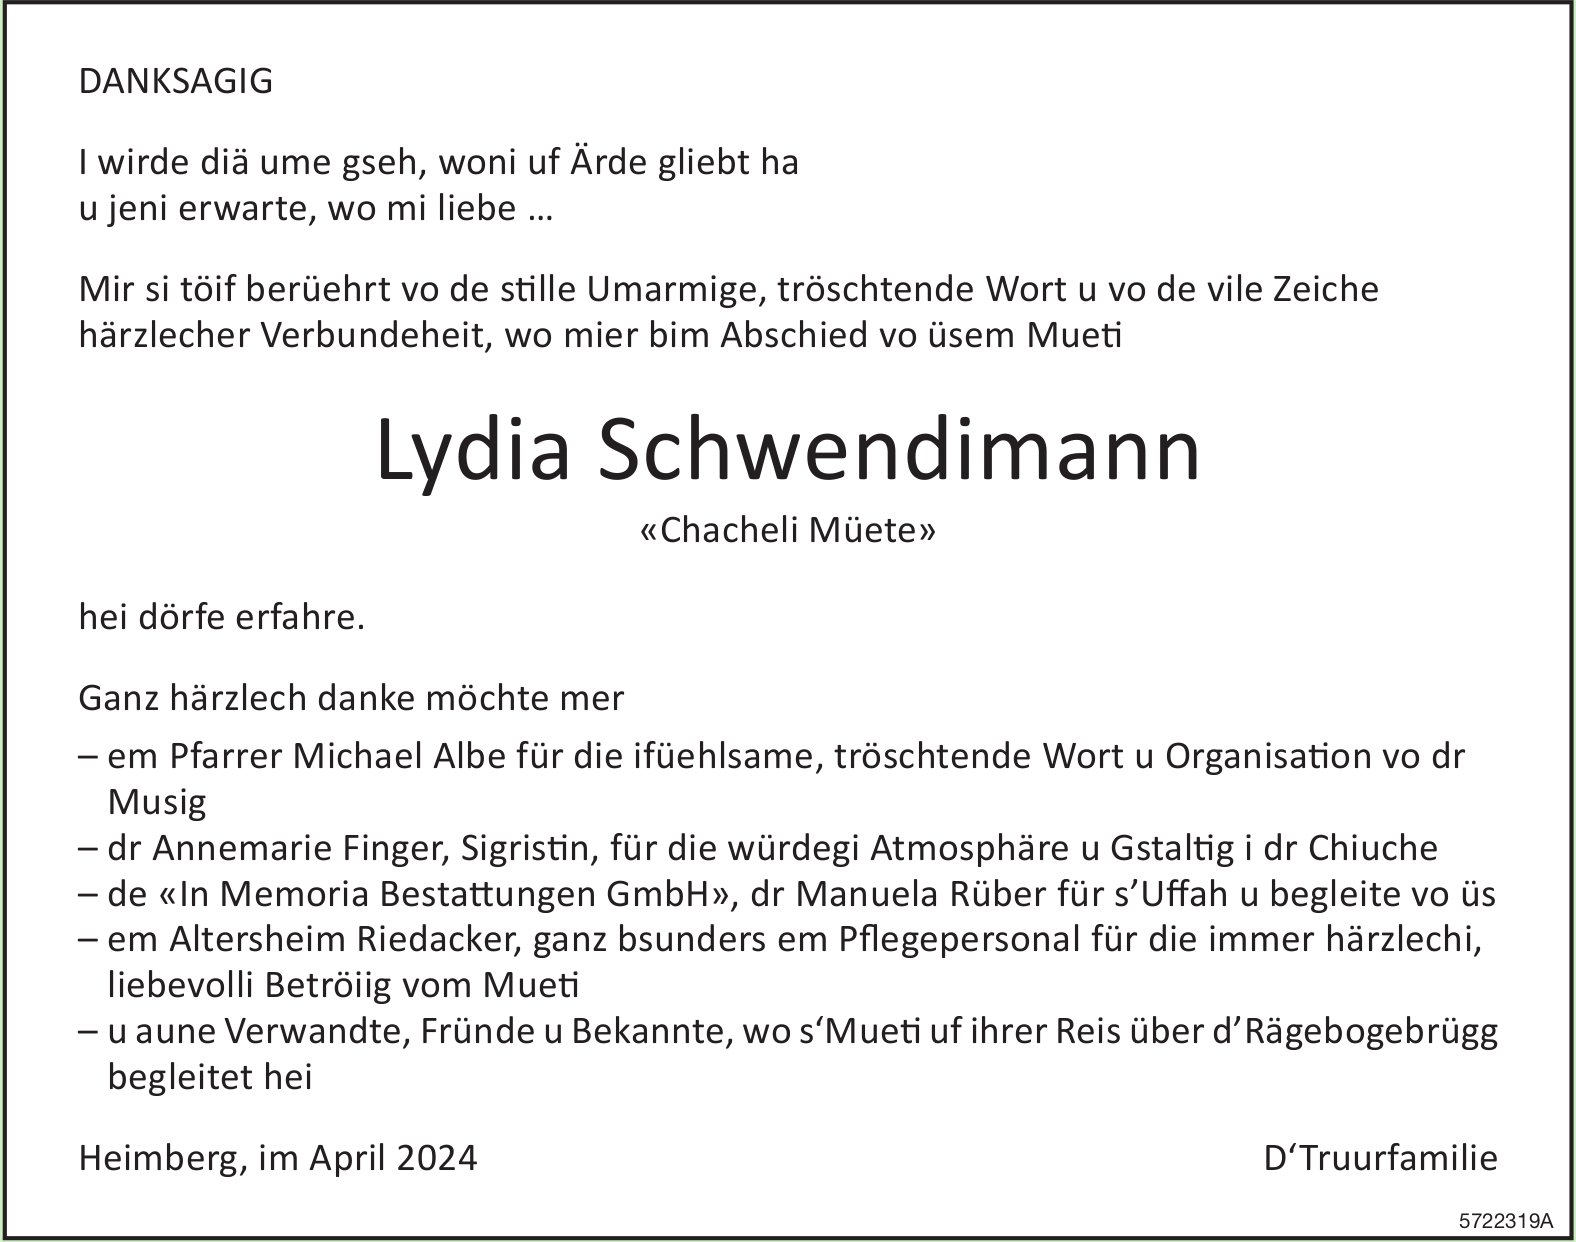 Schwendimann Lydia, im April 2024 / DS